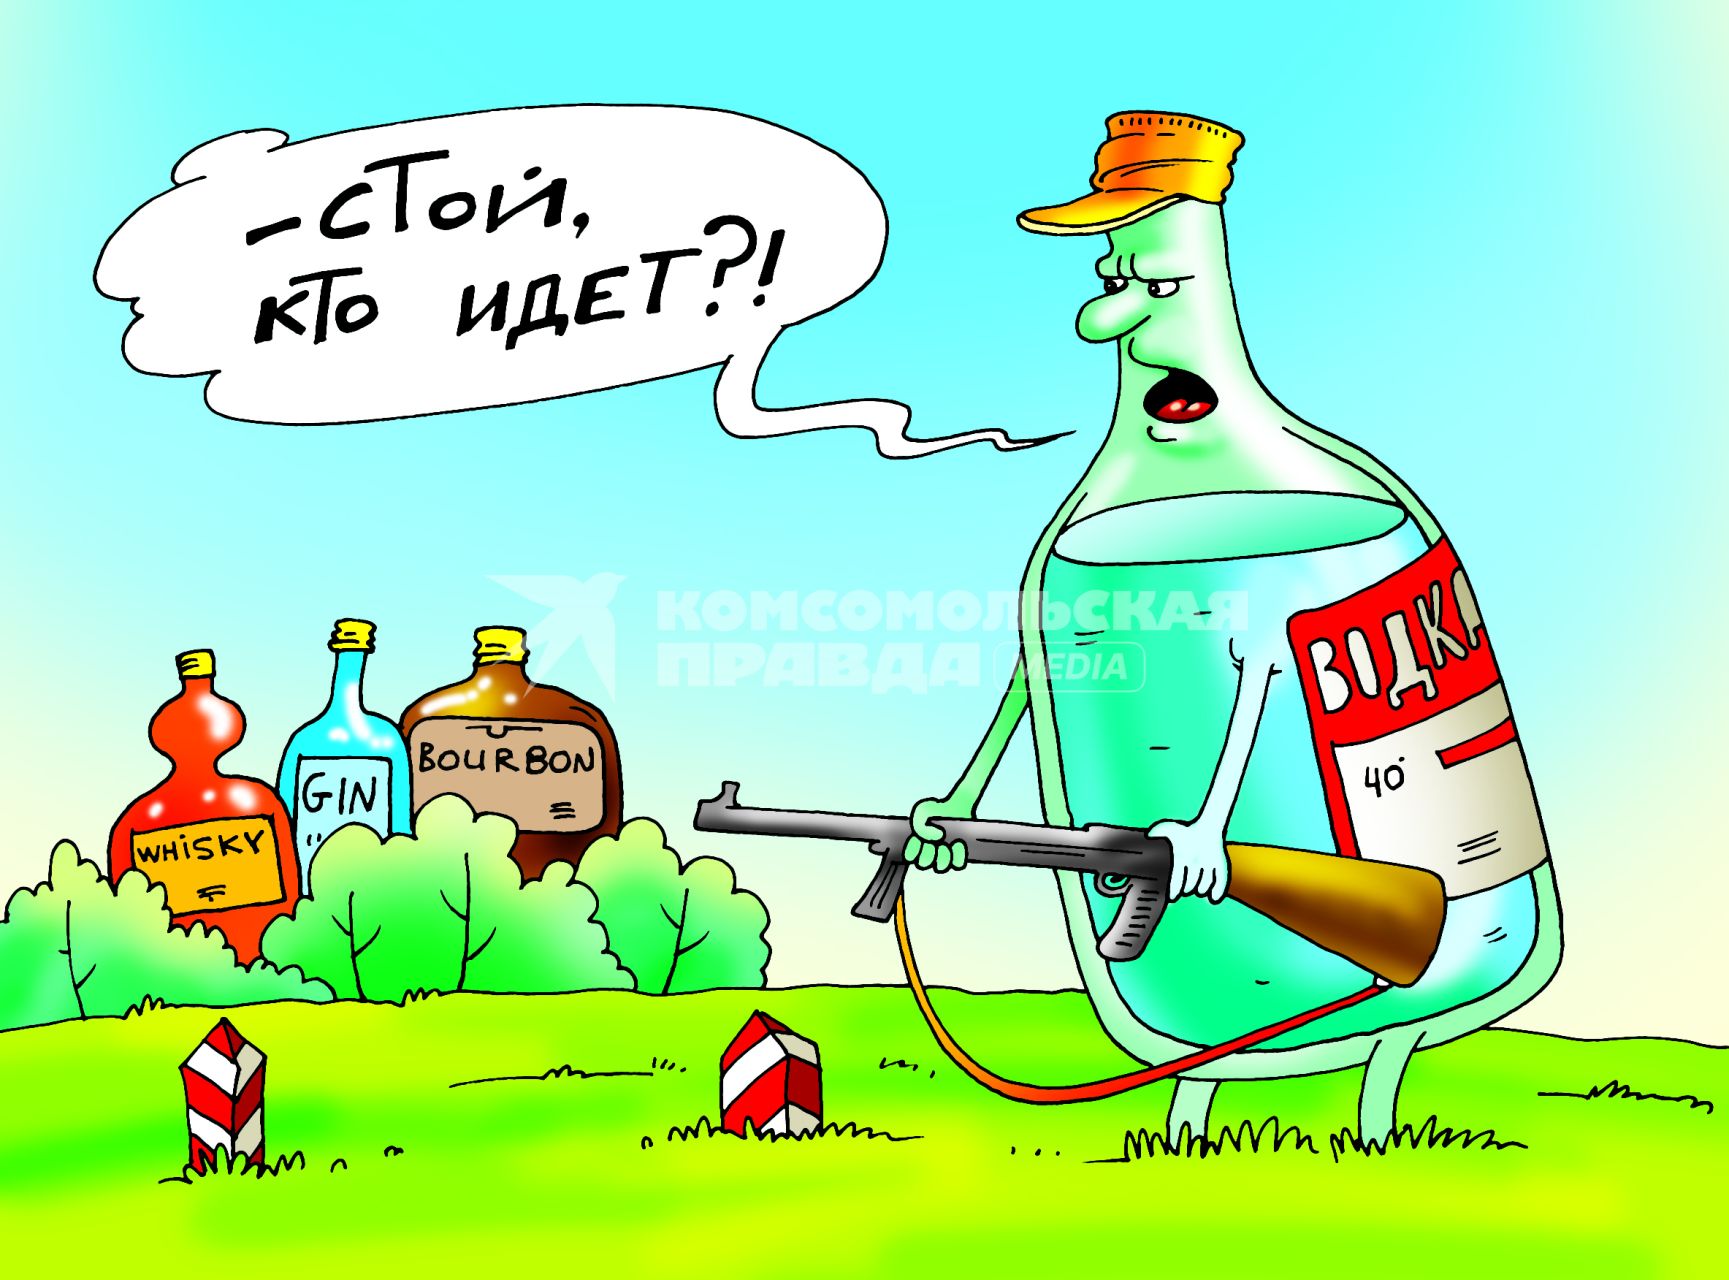 Карикатура на тему запрета алкоголя из США и Европы.